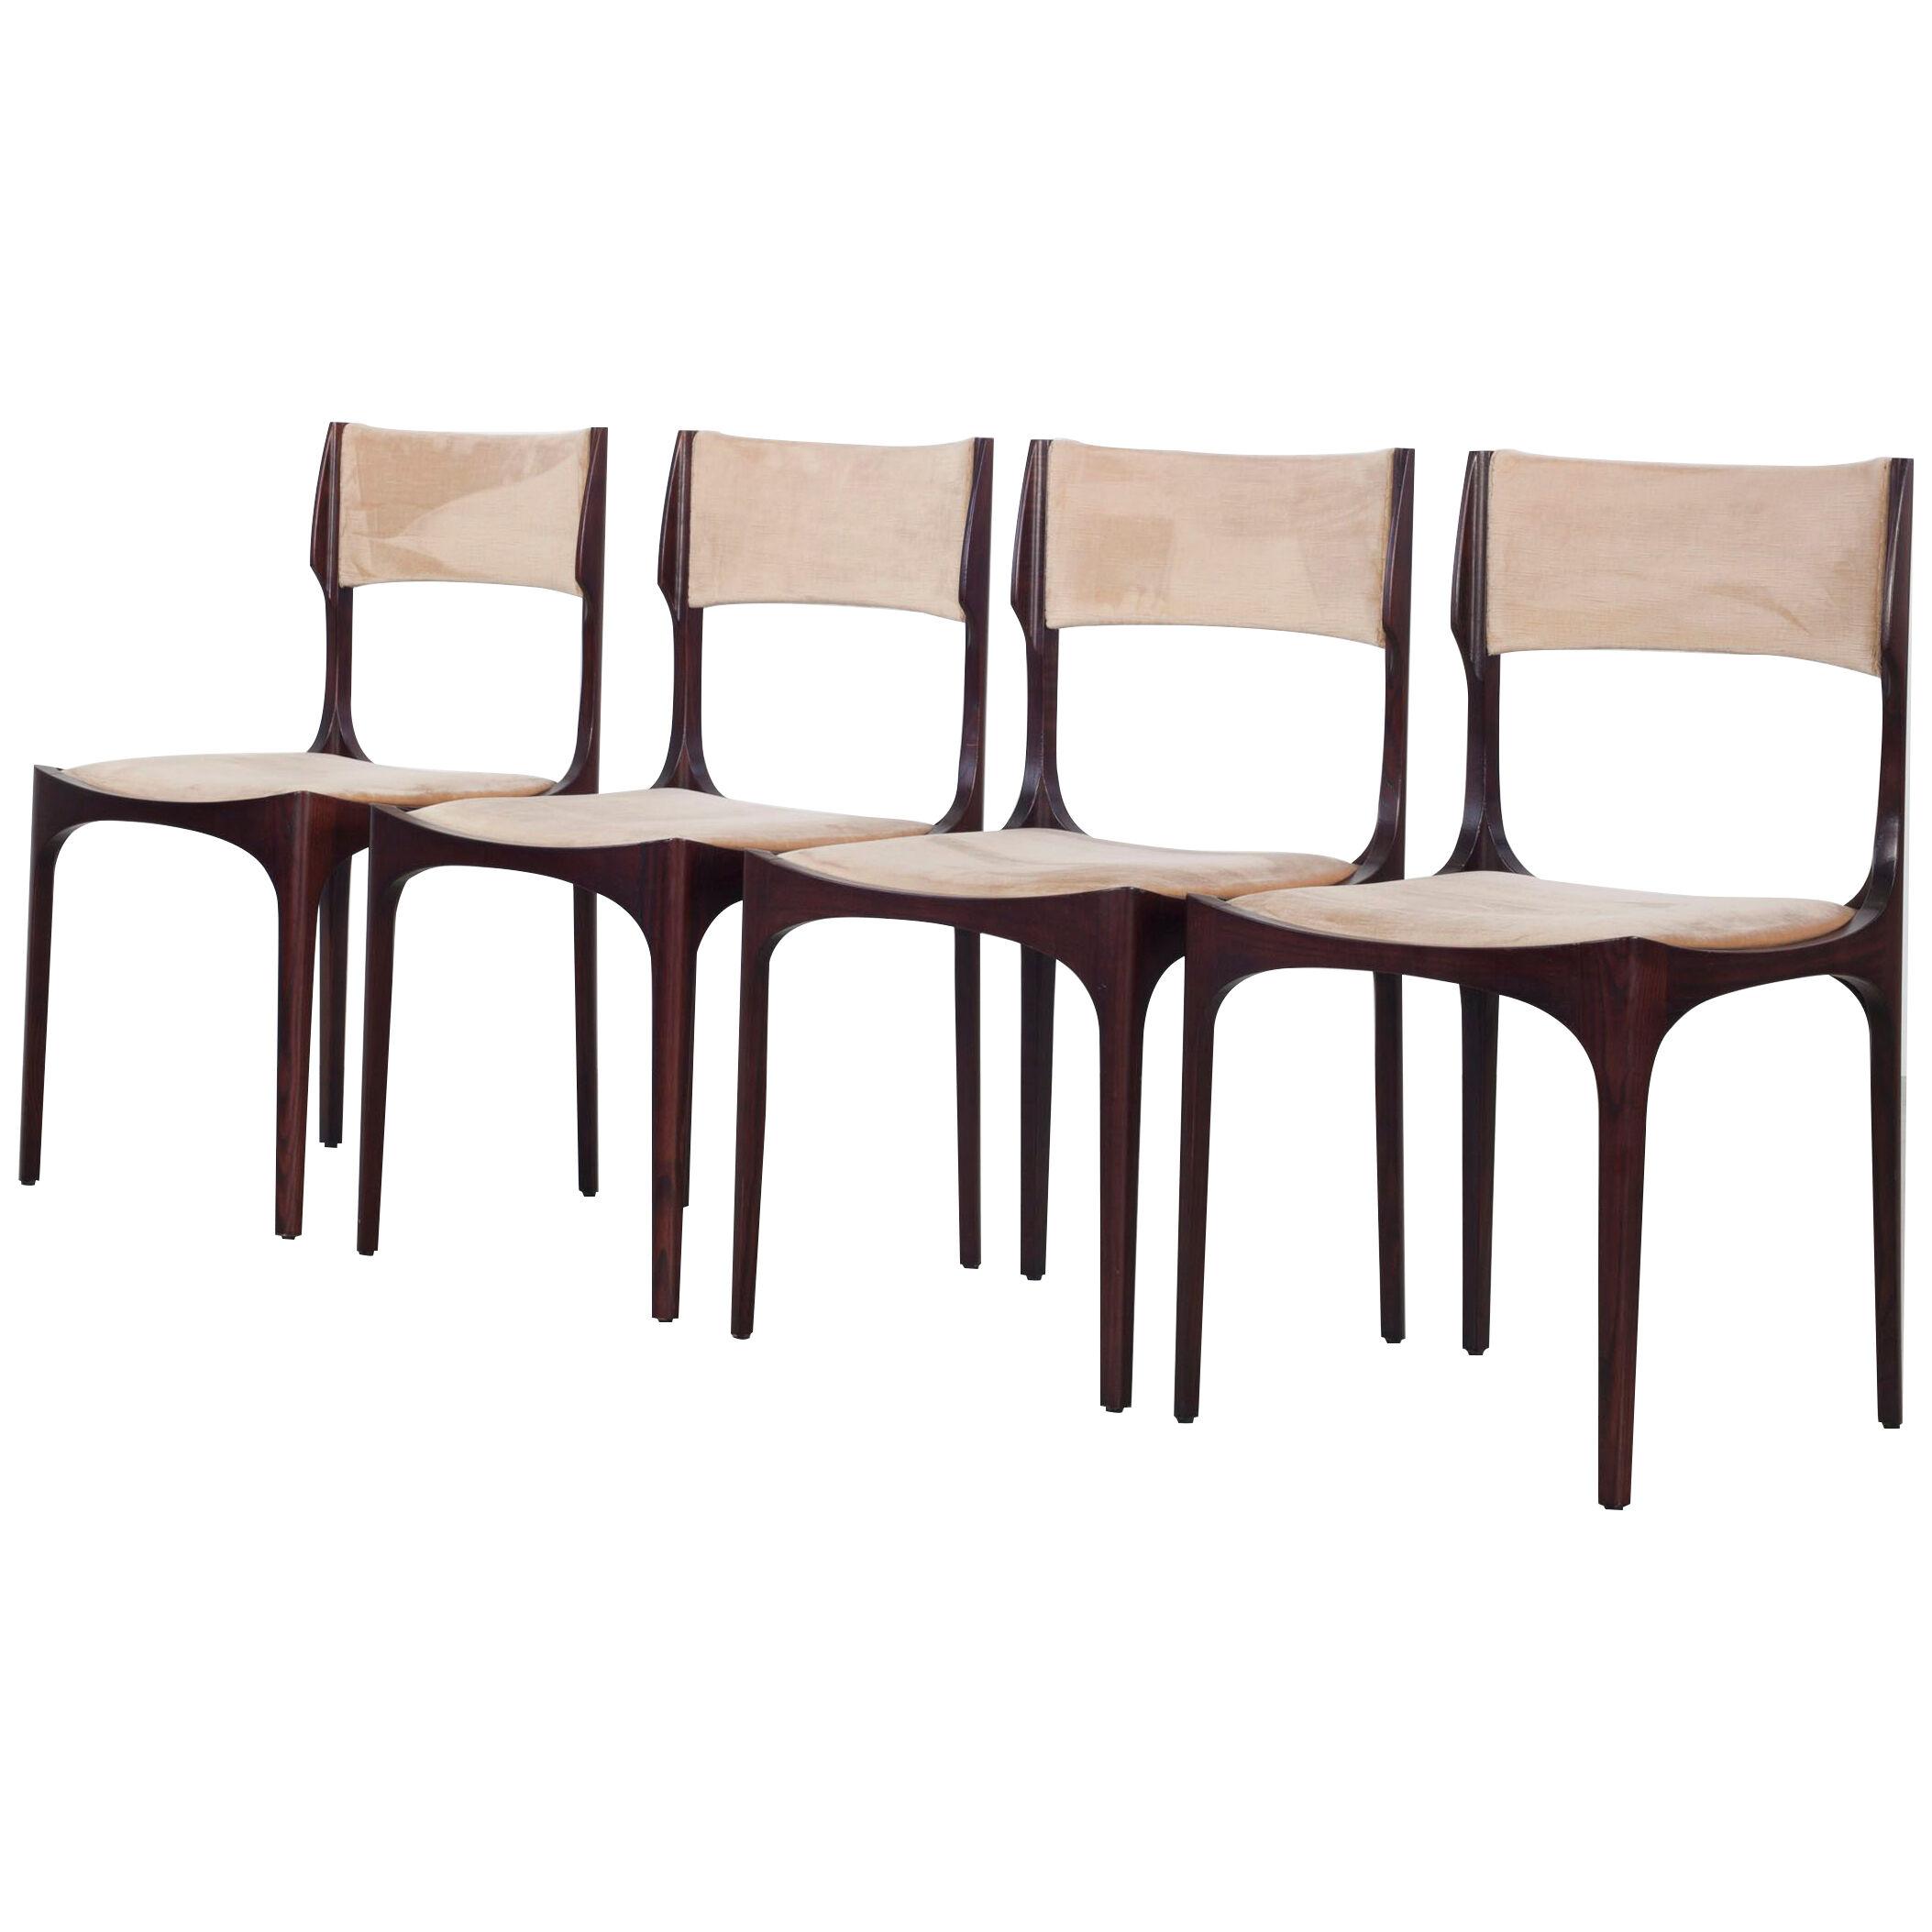 Set of 4 Giuseppe Gibelli chairs.